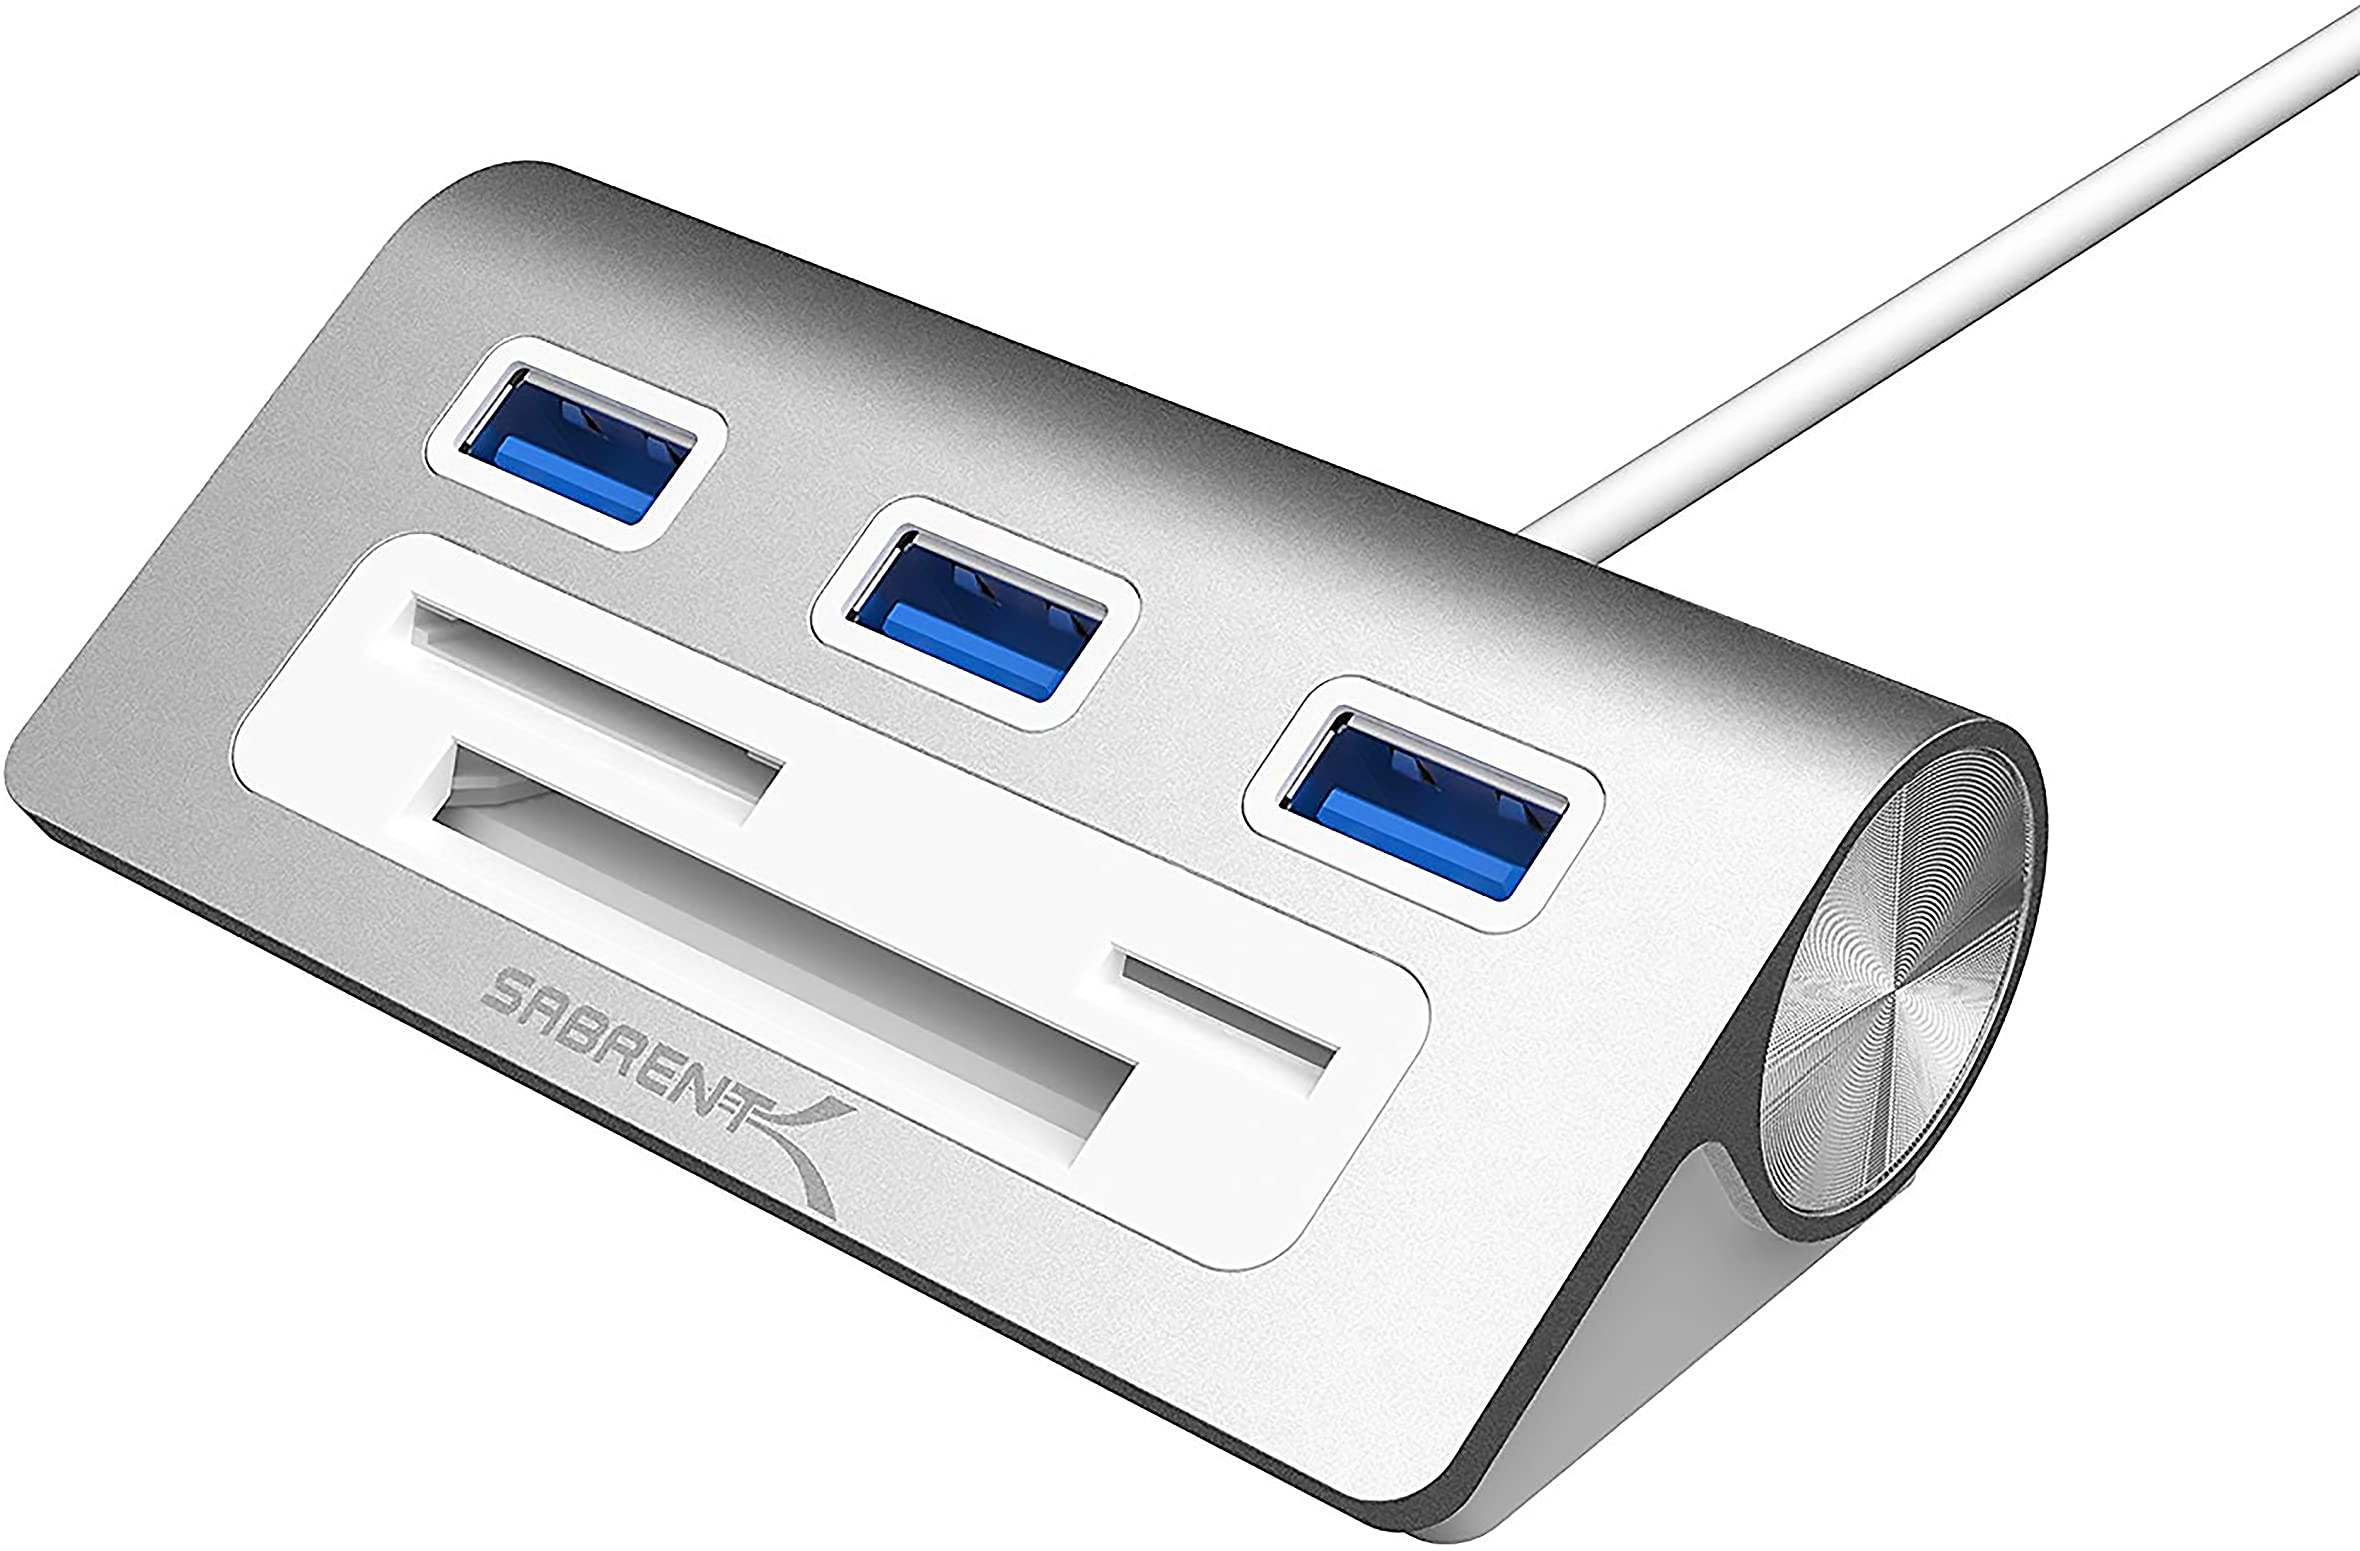 SABRENT USB hub 3.2x1, USB Adapter 6 in 1 mit 3 Port USB | CF, SD/microSD kartenleser, USB Verteiler, mehrfach USB verlängerung für MacBook, MacBook Air, Mac Mini, oder jeder PC (HB-MACR)